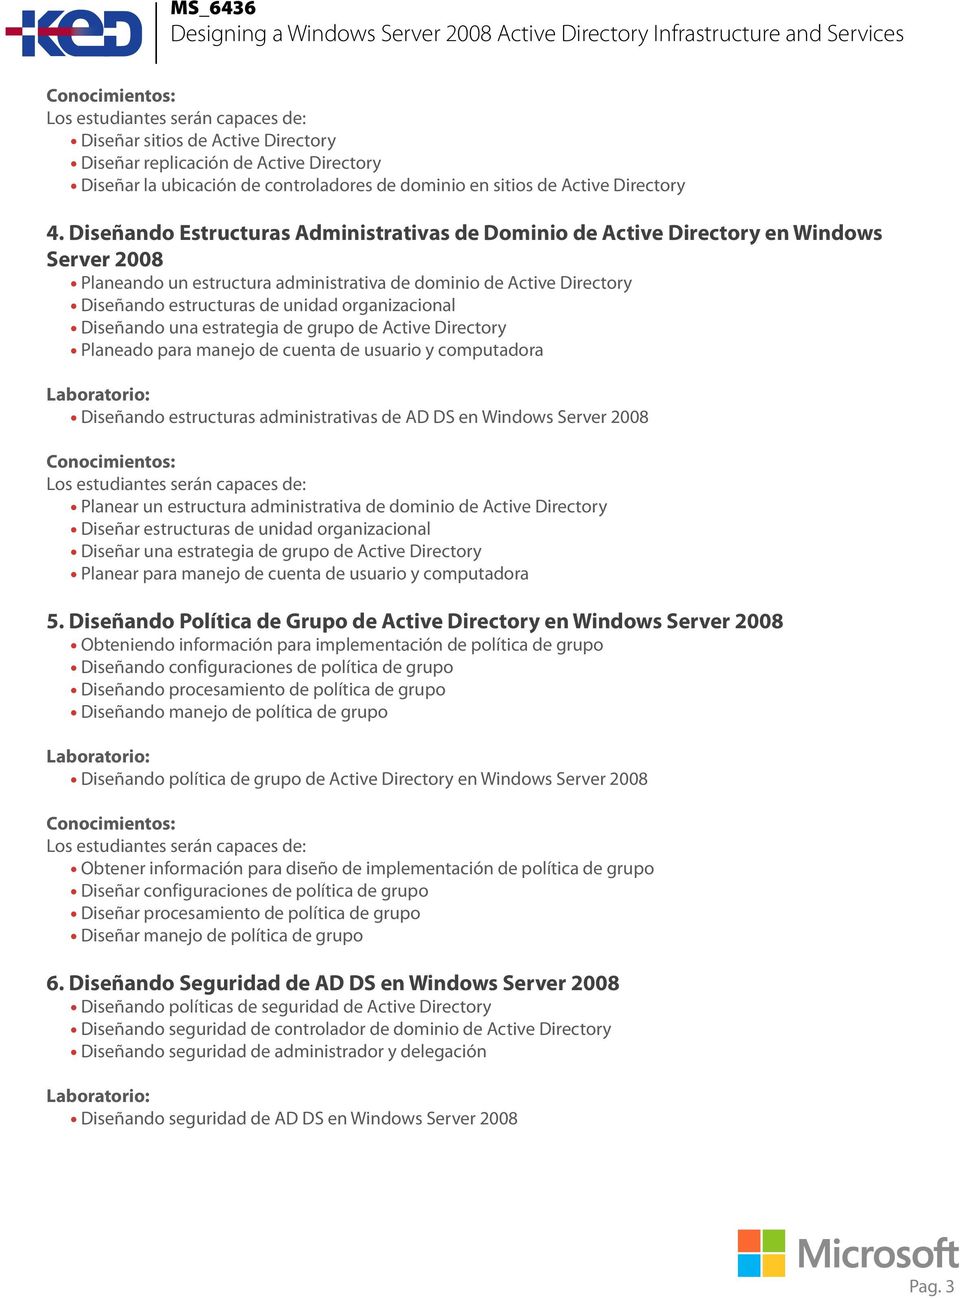 organizacional Diseñando una estrategia de grupo de Active Directory Planeado para manejo de cuenta de usuario y computadora Diseñando estructuras administrativas de AD DS en Windows Server 2008